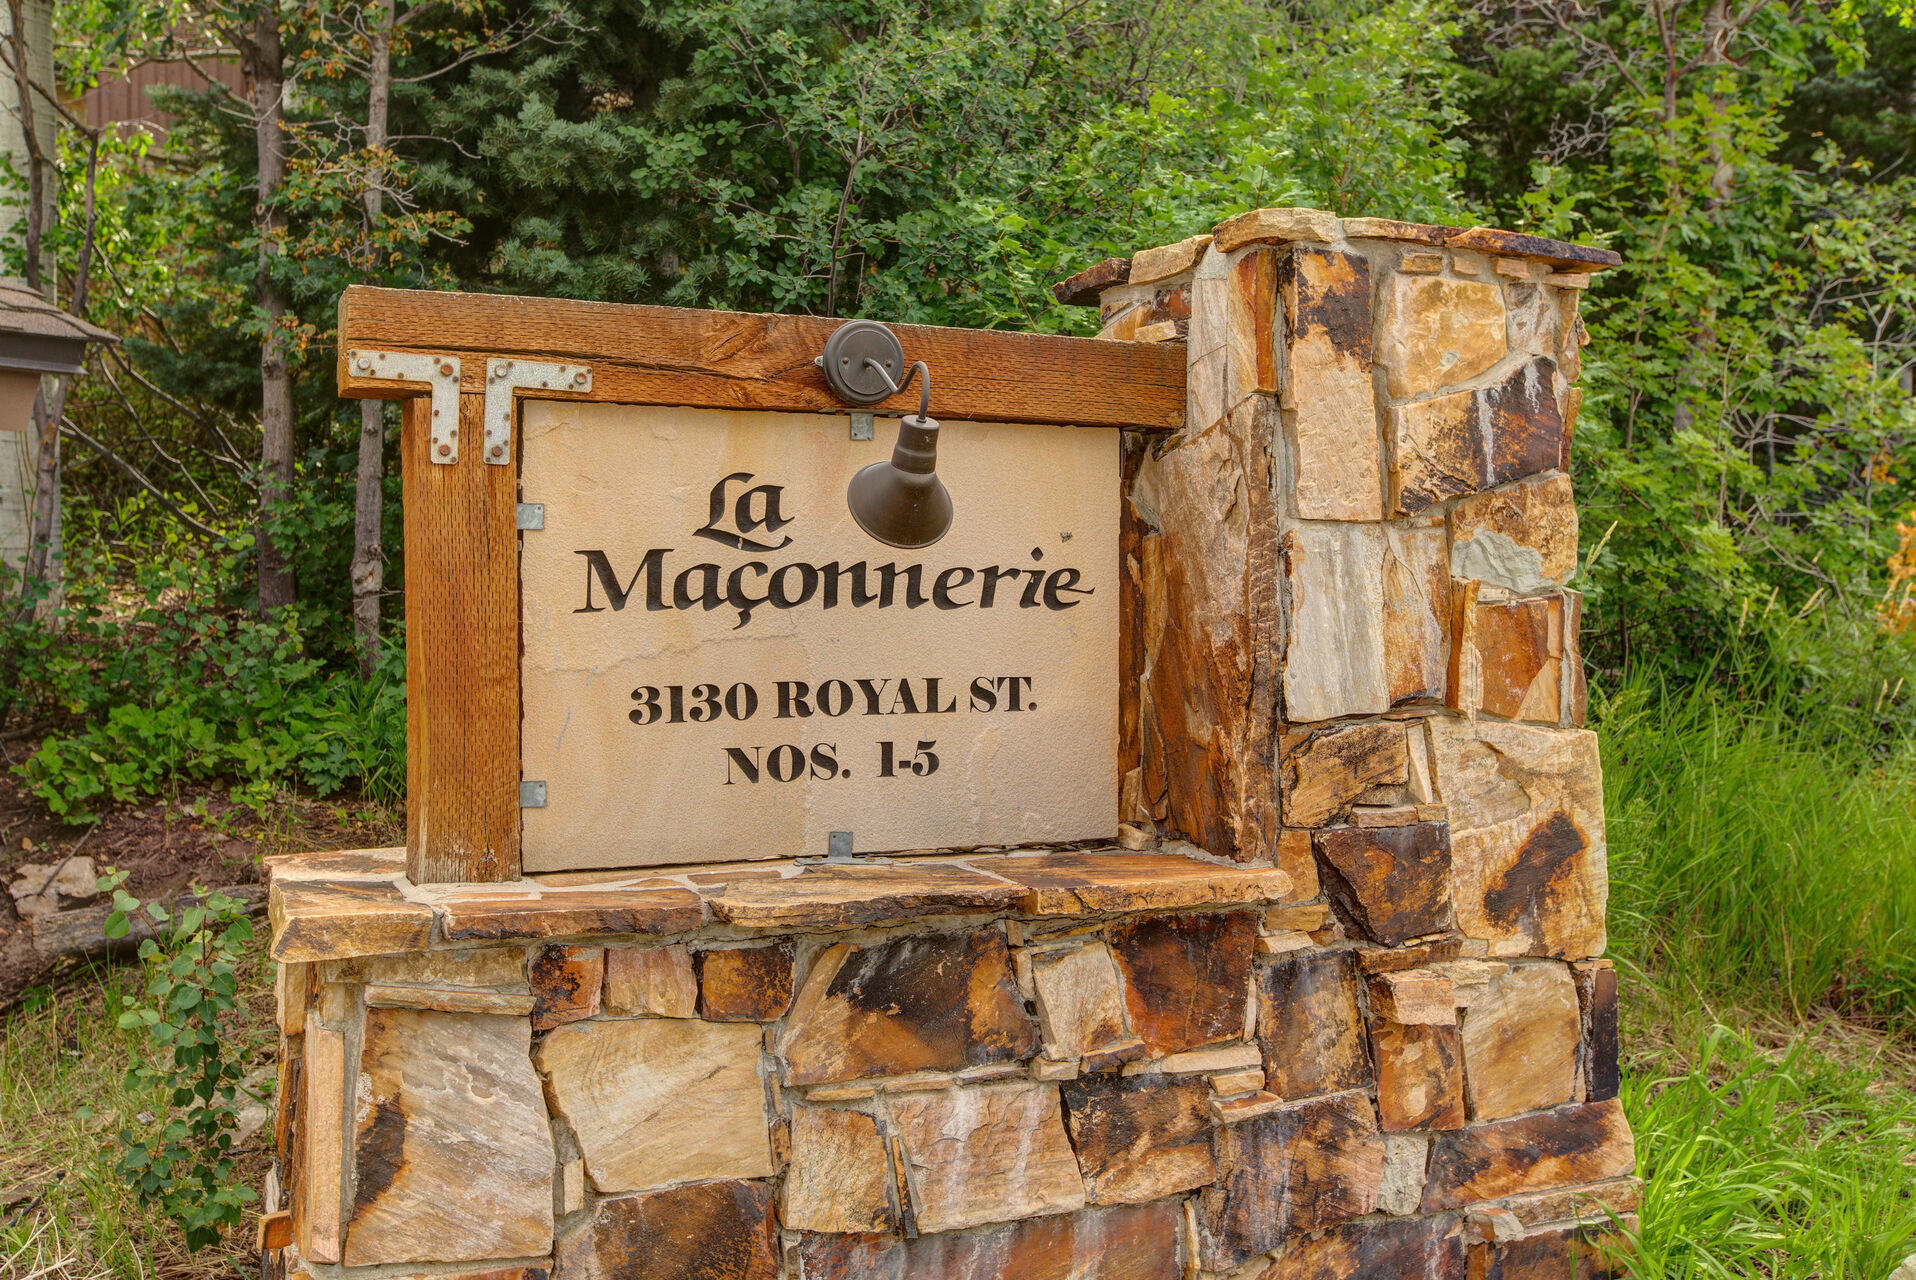 Entrance to La Maconnerie Nos. 1-5